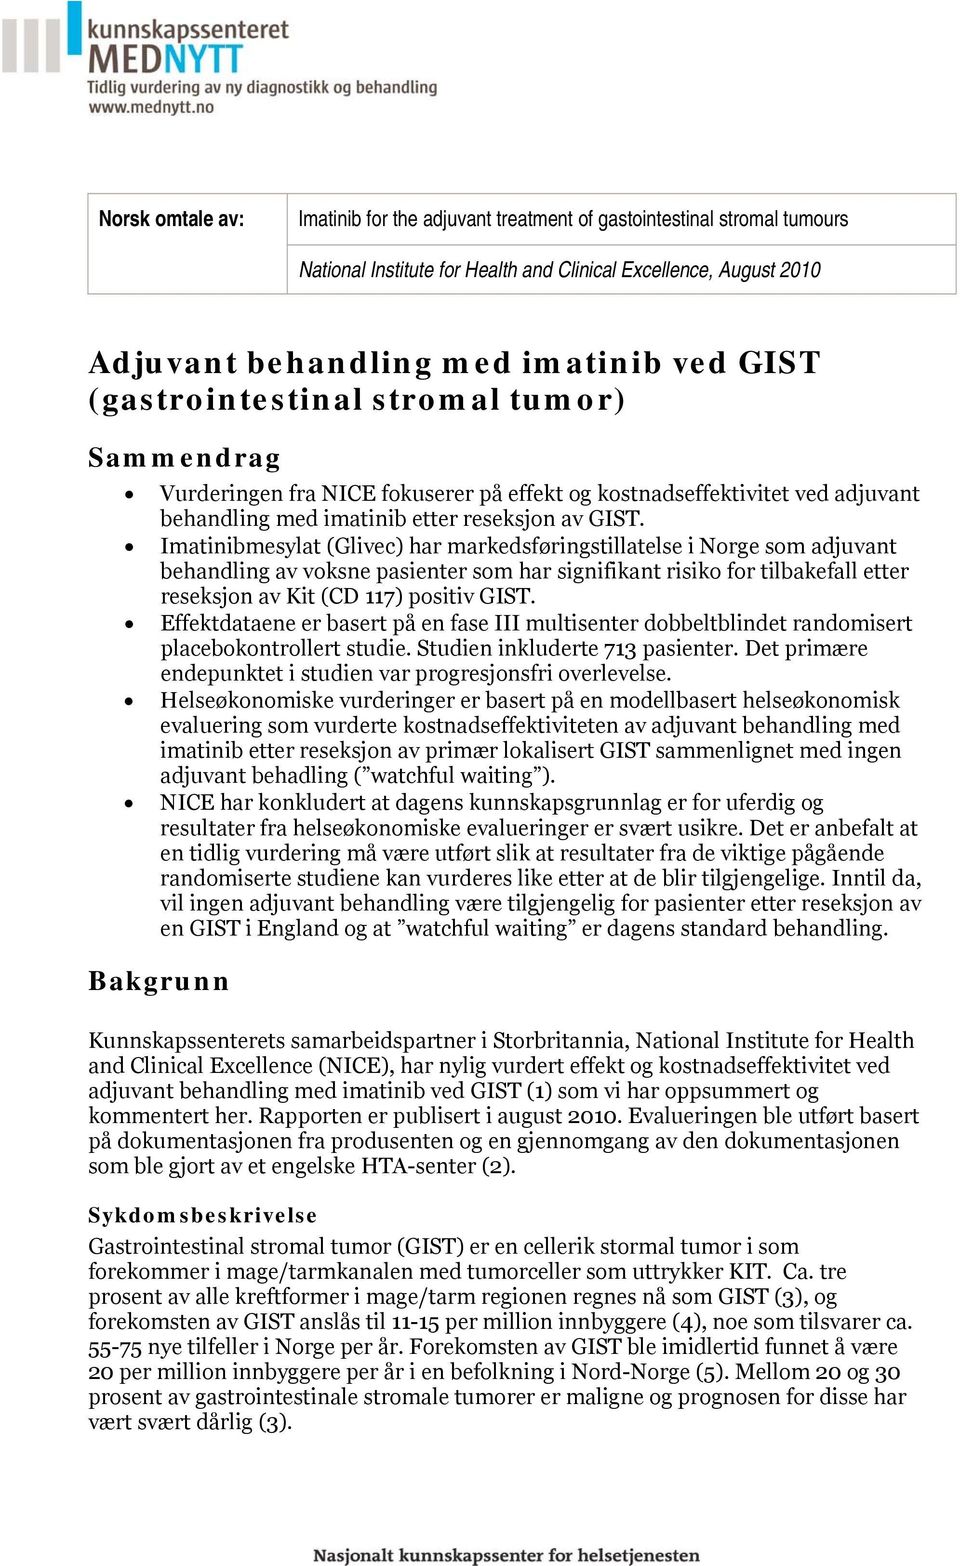 Imatinibmesylat (Glivec) har markedsføringstillatelse i Norge som adjuvant behandling av voksne pasienter som har signifikant risiko for tilbakefall etter reseksjon av Kit (CD 117) positiv GIST.